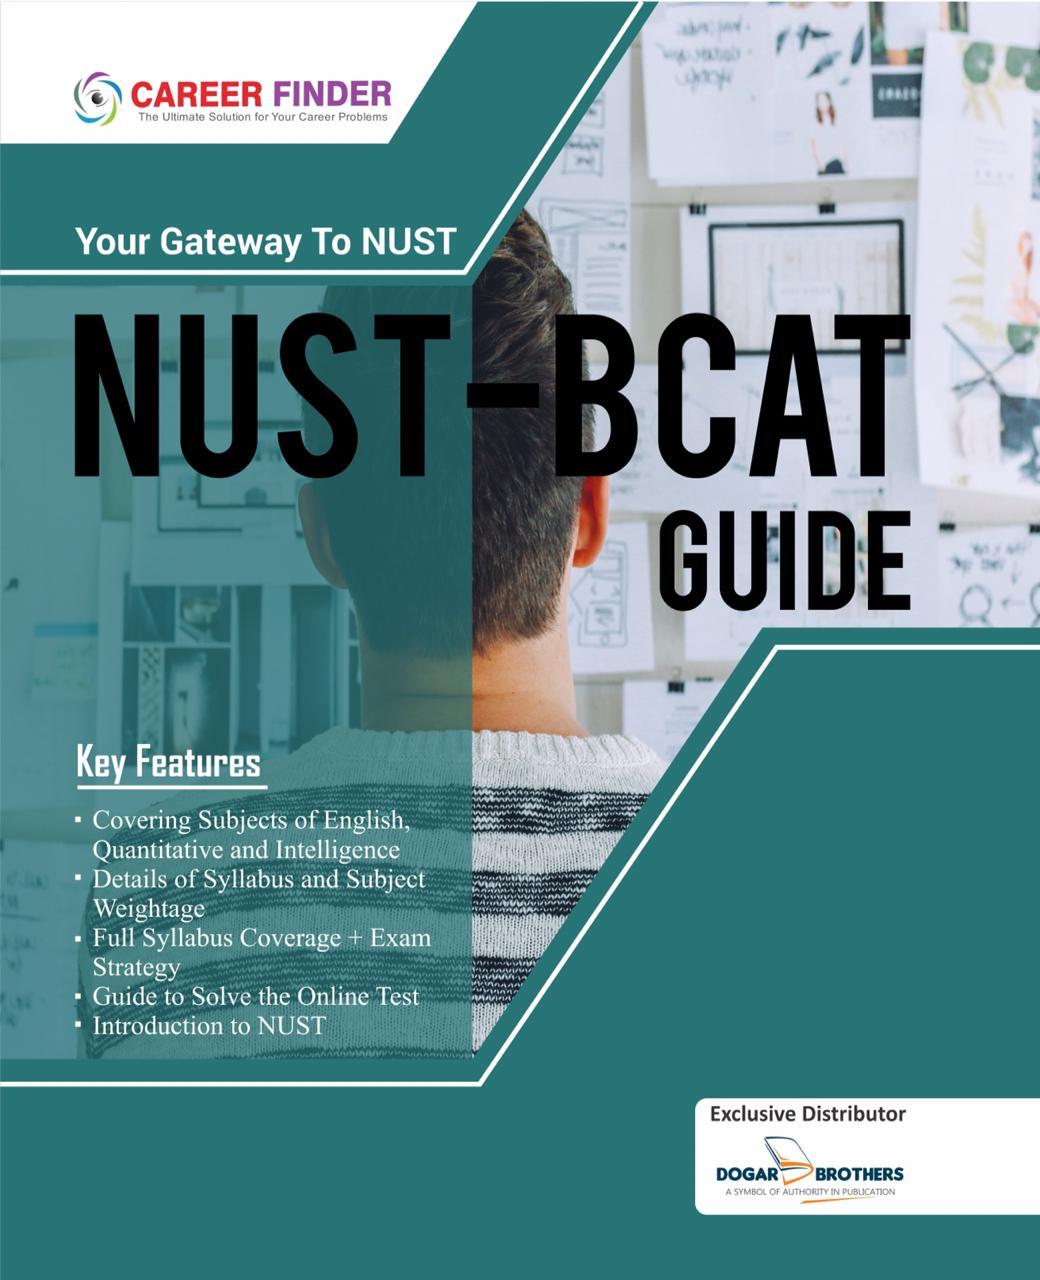 NUST-BCAT Guide by Career Finder - dogarbooks